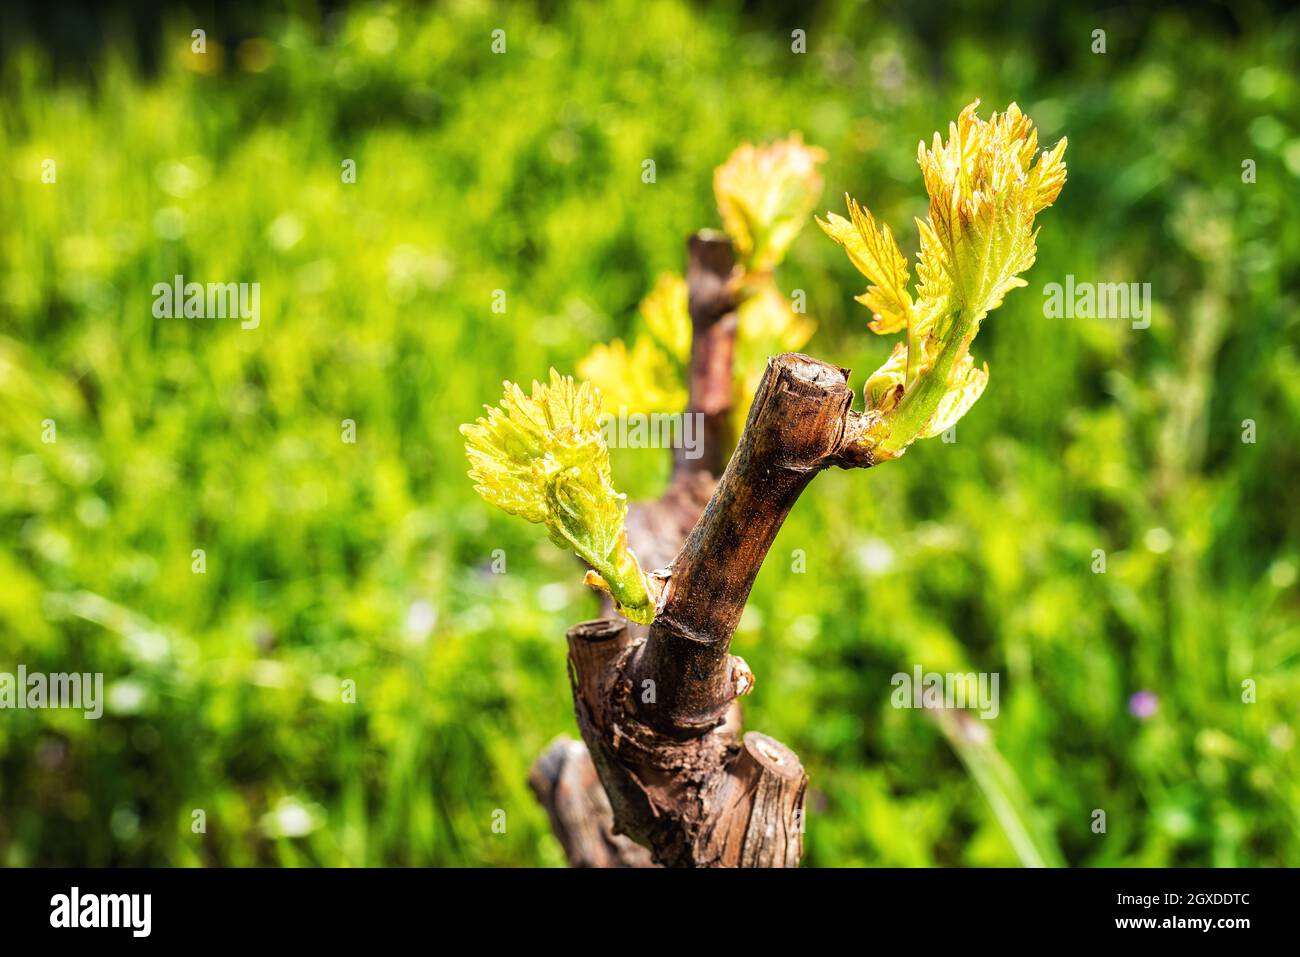 Junger Blütenstand der Rebe. Nahaufnahme der Knospen und jungen Blätter in den Zweigen eines Weinbergs in Sardinien, Italien. Traditionelle Landwirtschaft. Stockfoto